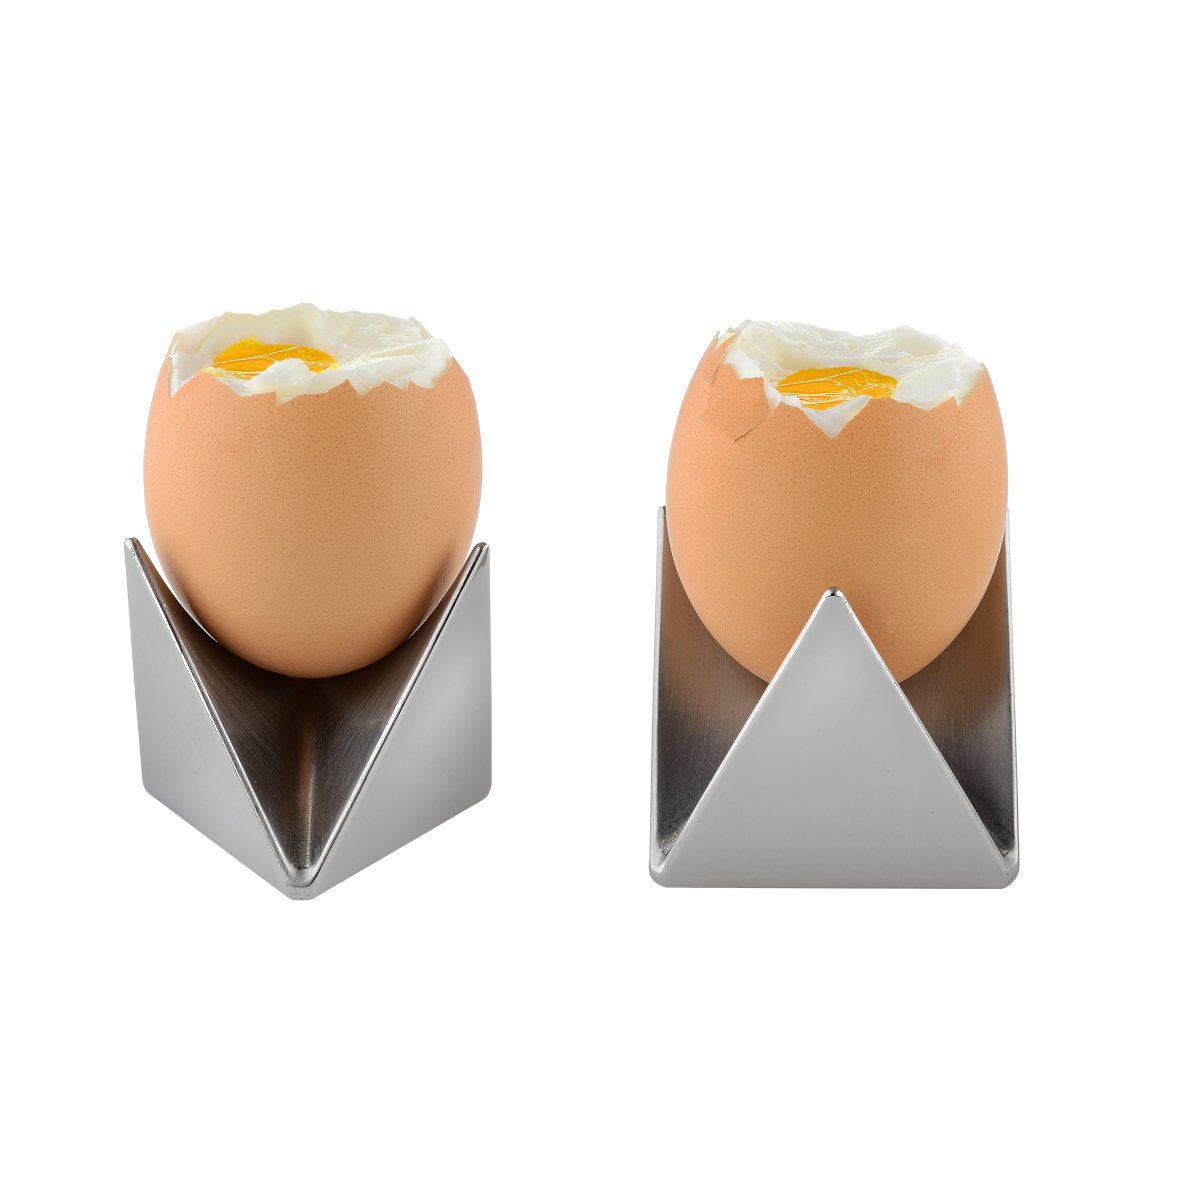 zusammenfügbare 2 Eierbecher Eierbecher Alessi ROOST, Eierbecher